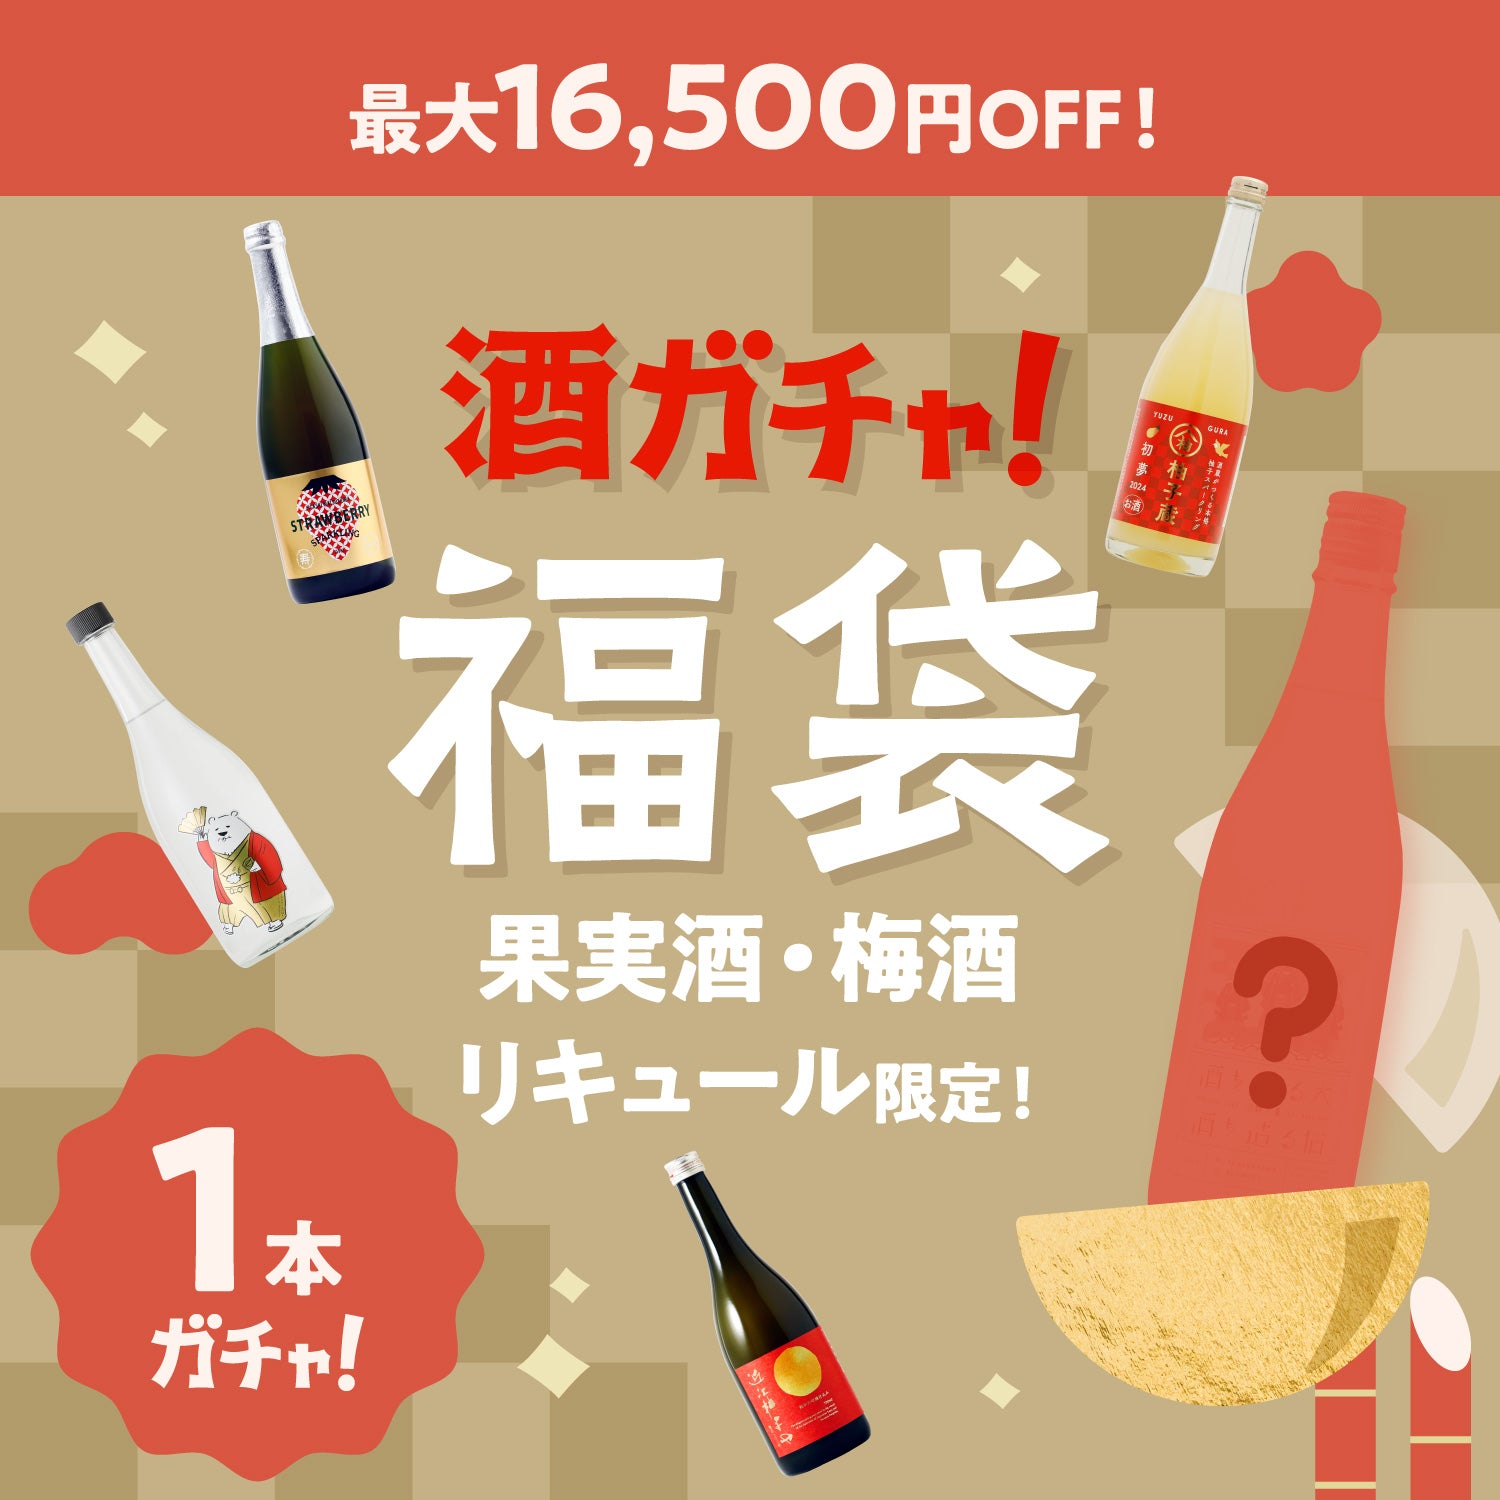 【最大16,500円OFF】1本酒ガチャ福袋-果実酒・梅酒・リキュール-